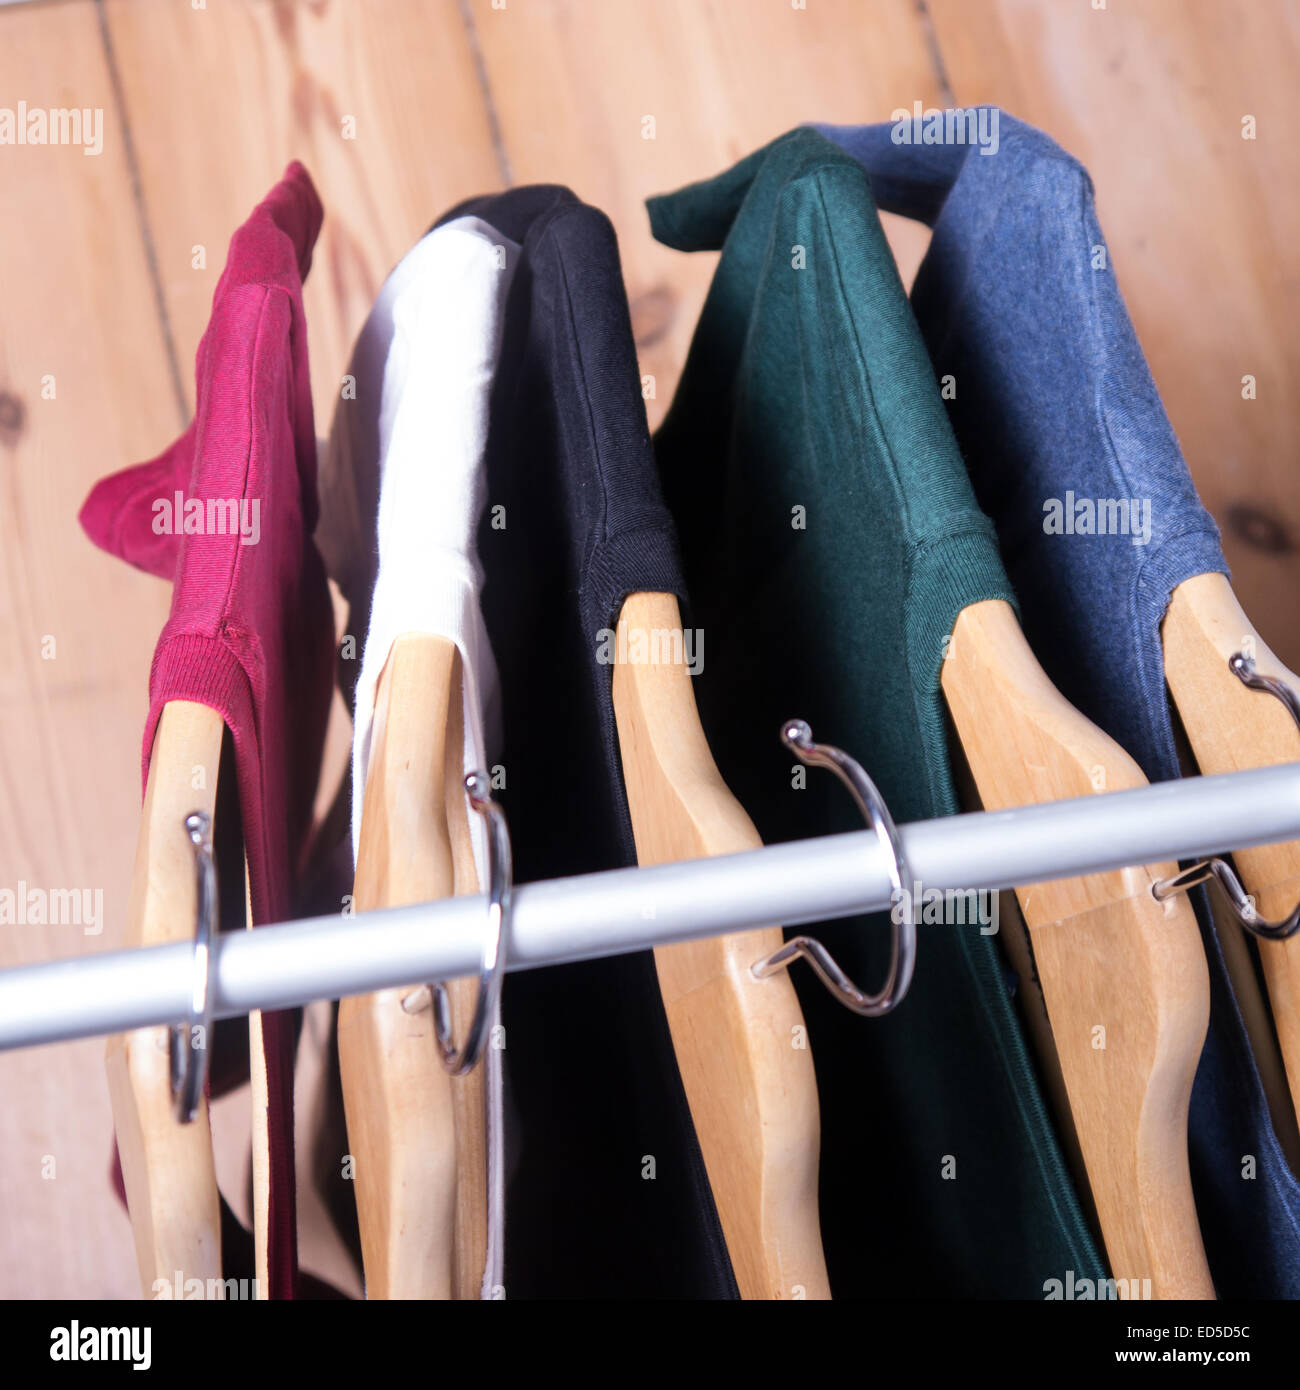 Kleiderbügel mit Shirts in verschiedenen Farben Stockfoto